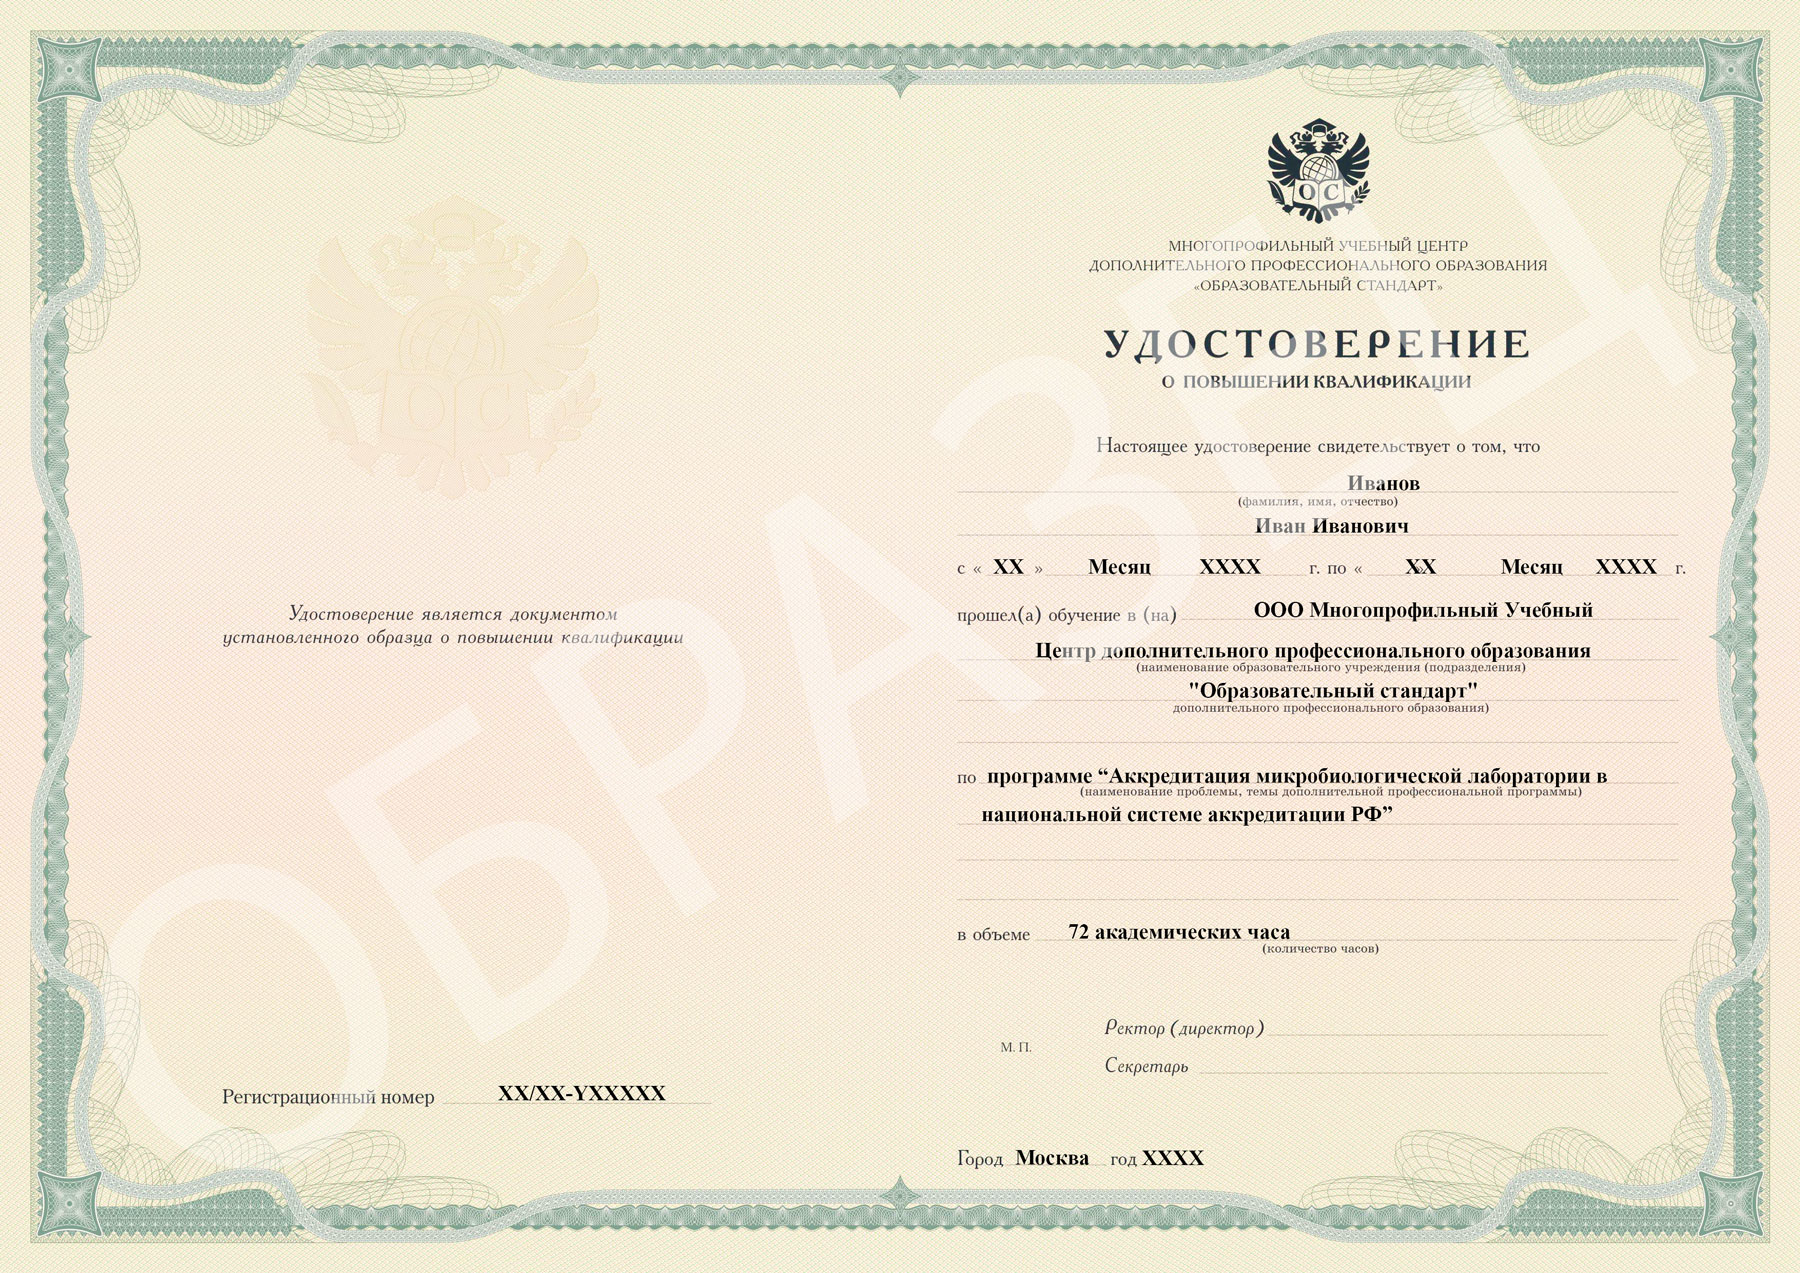 Аккредитация микробиологической лаборатории в национальной системе аккредитации РФ образец удостоверения